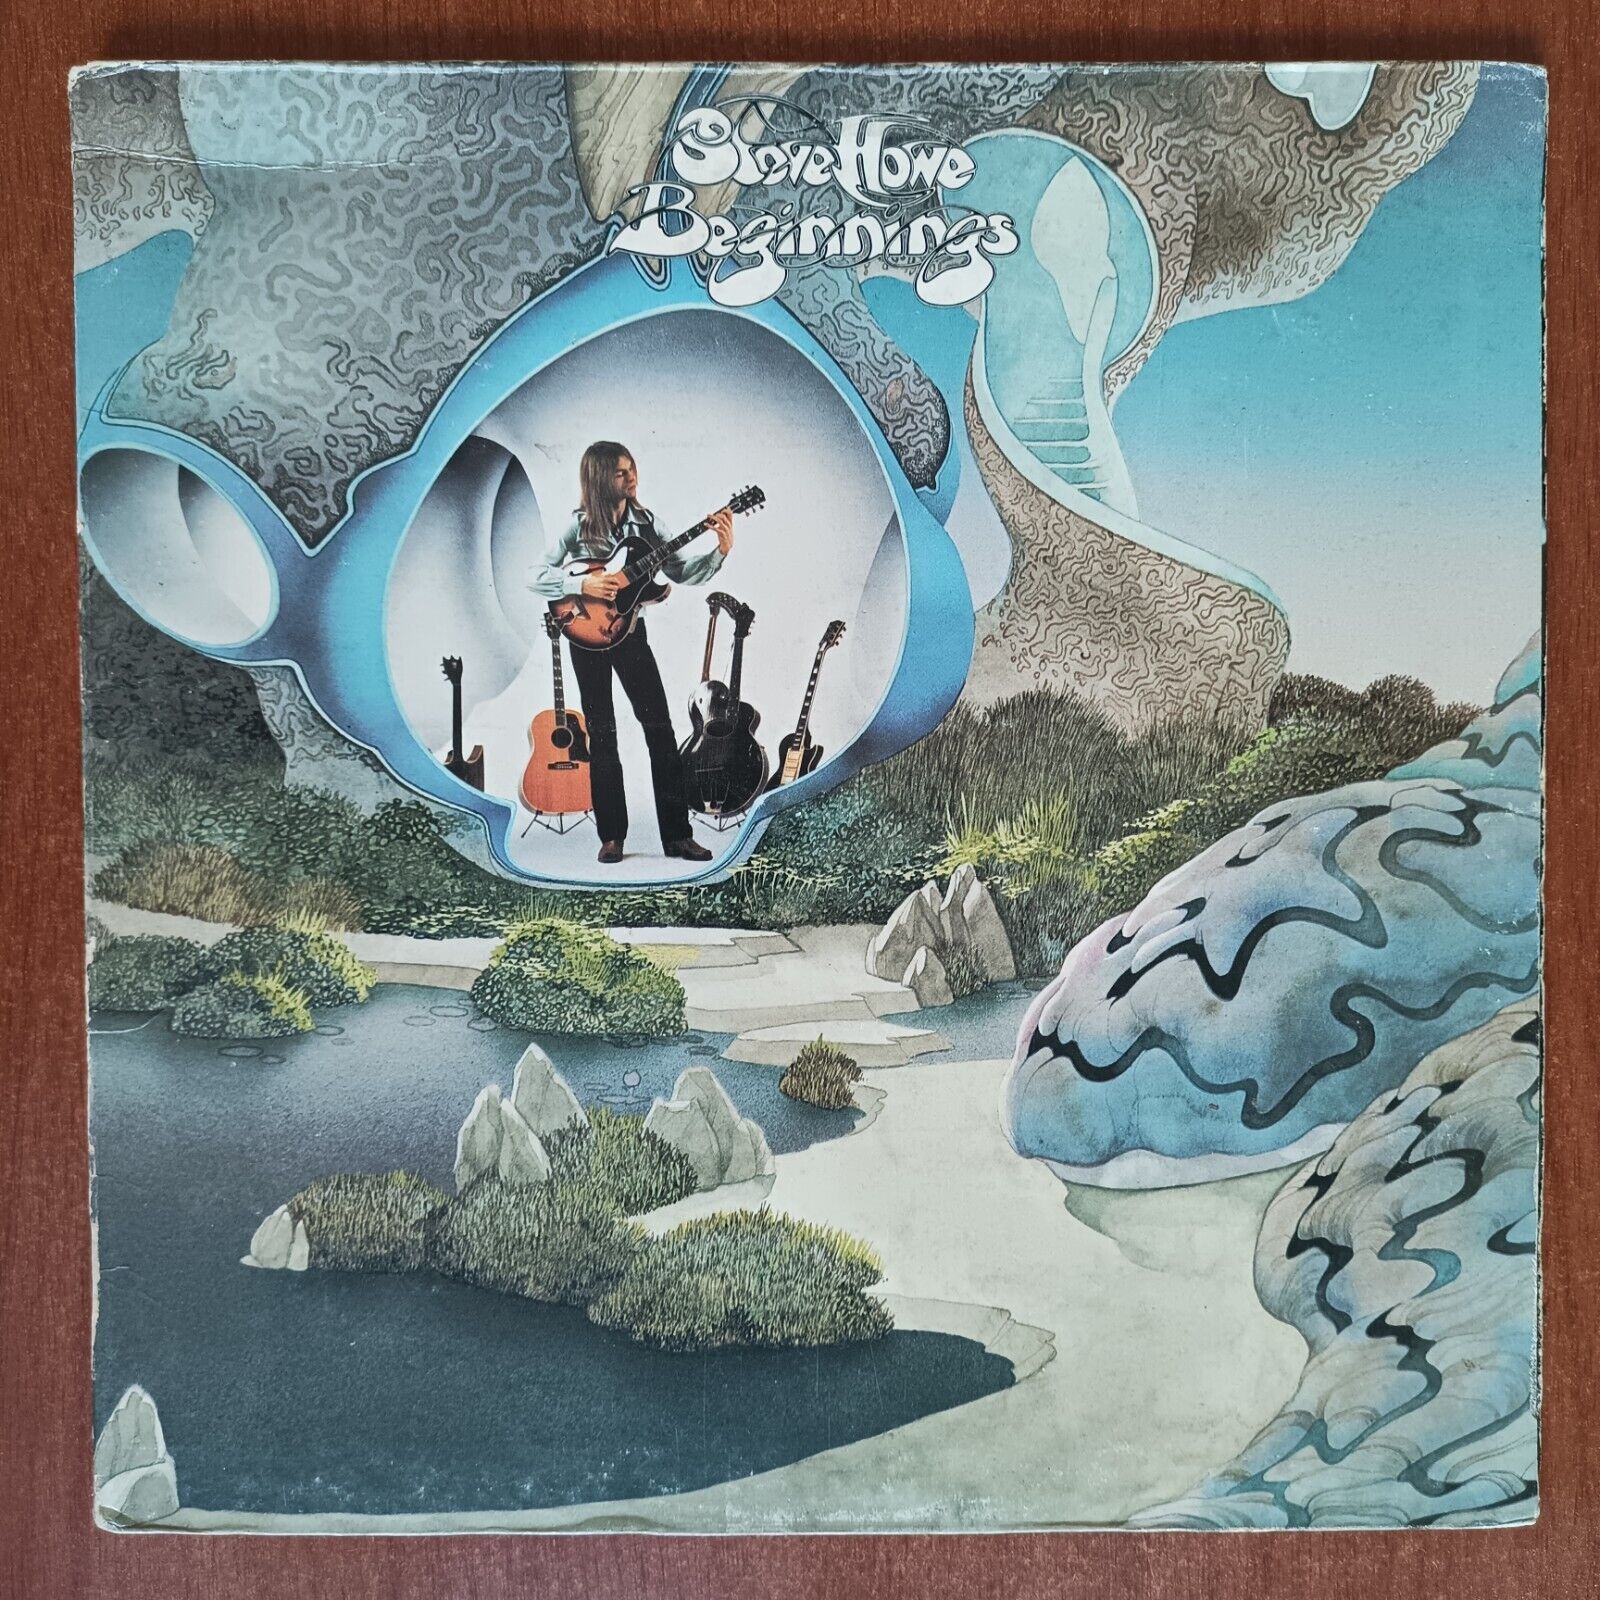 Steve Howe – Beginnings [1975] Vinyl LP Alternative Rock Prog Rock Altantic US